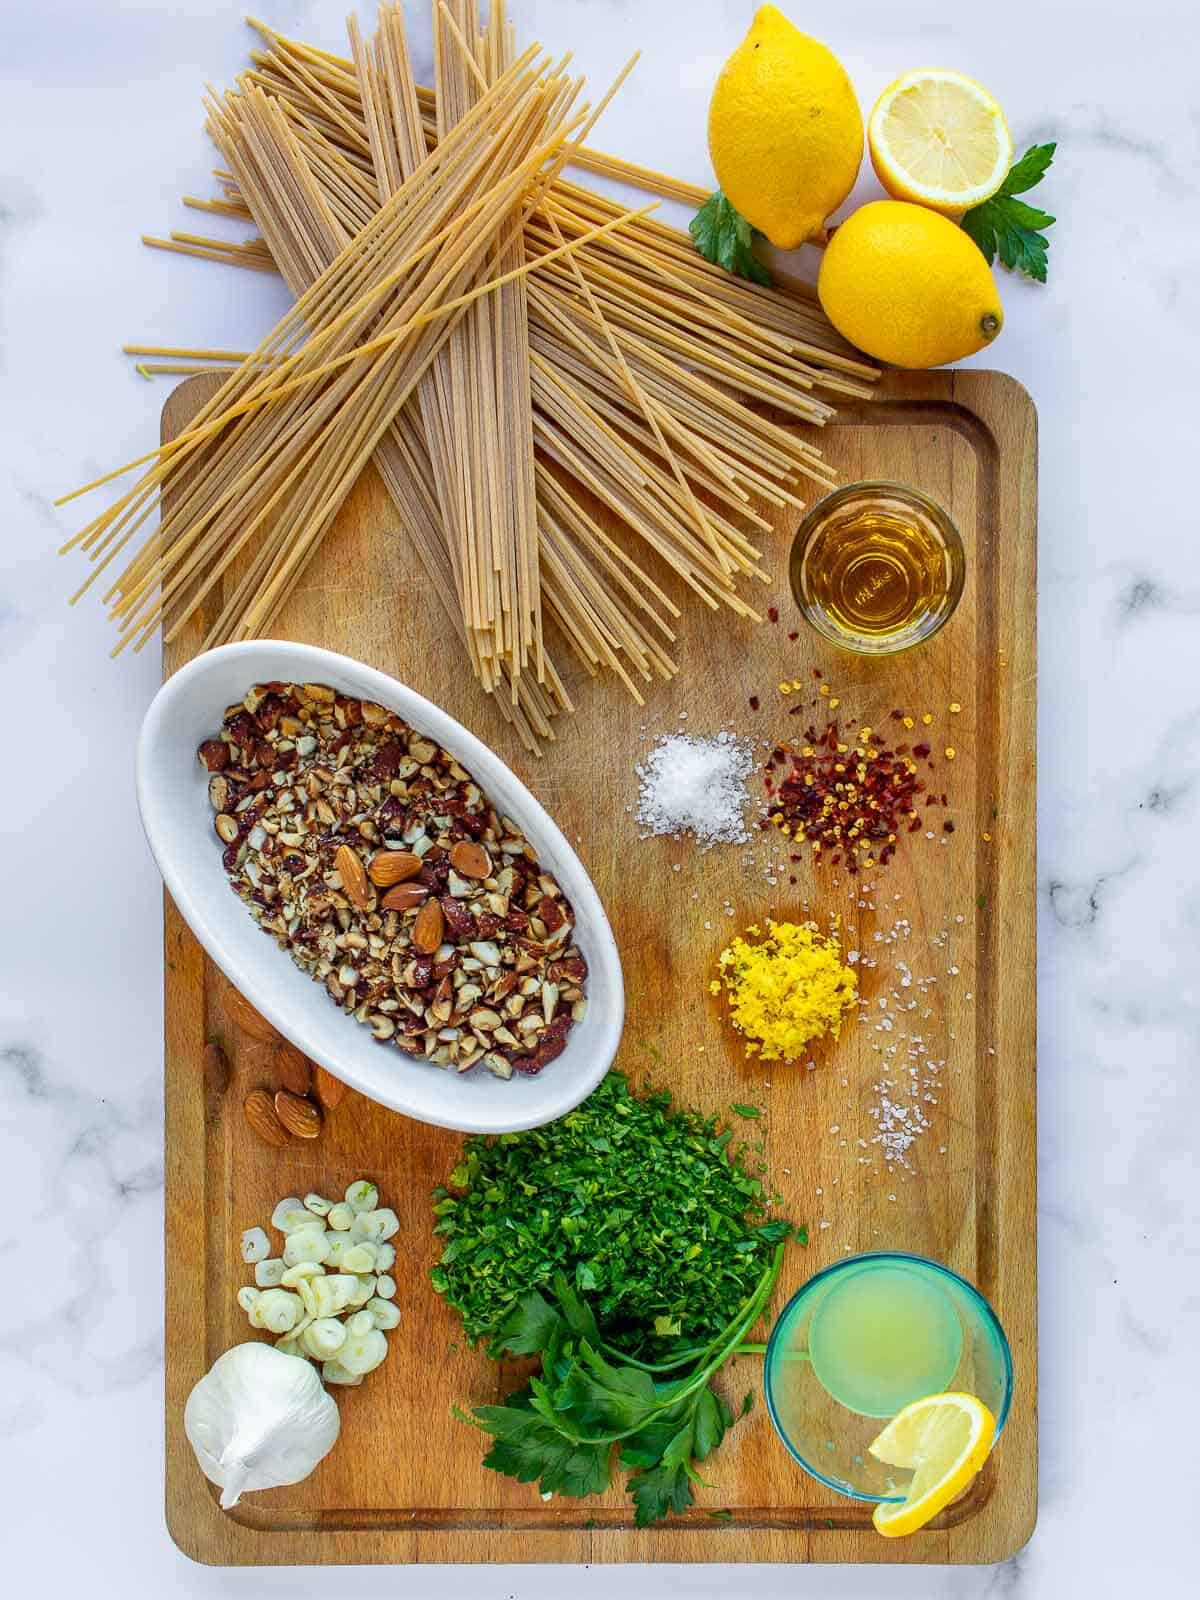 ingredients to make lemon garlic pasta.